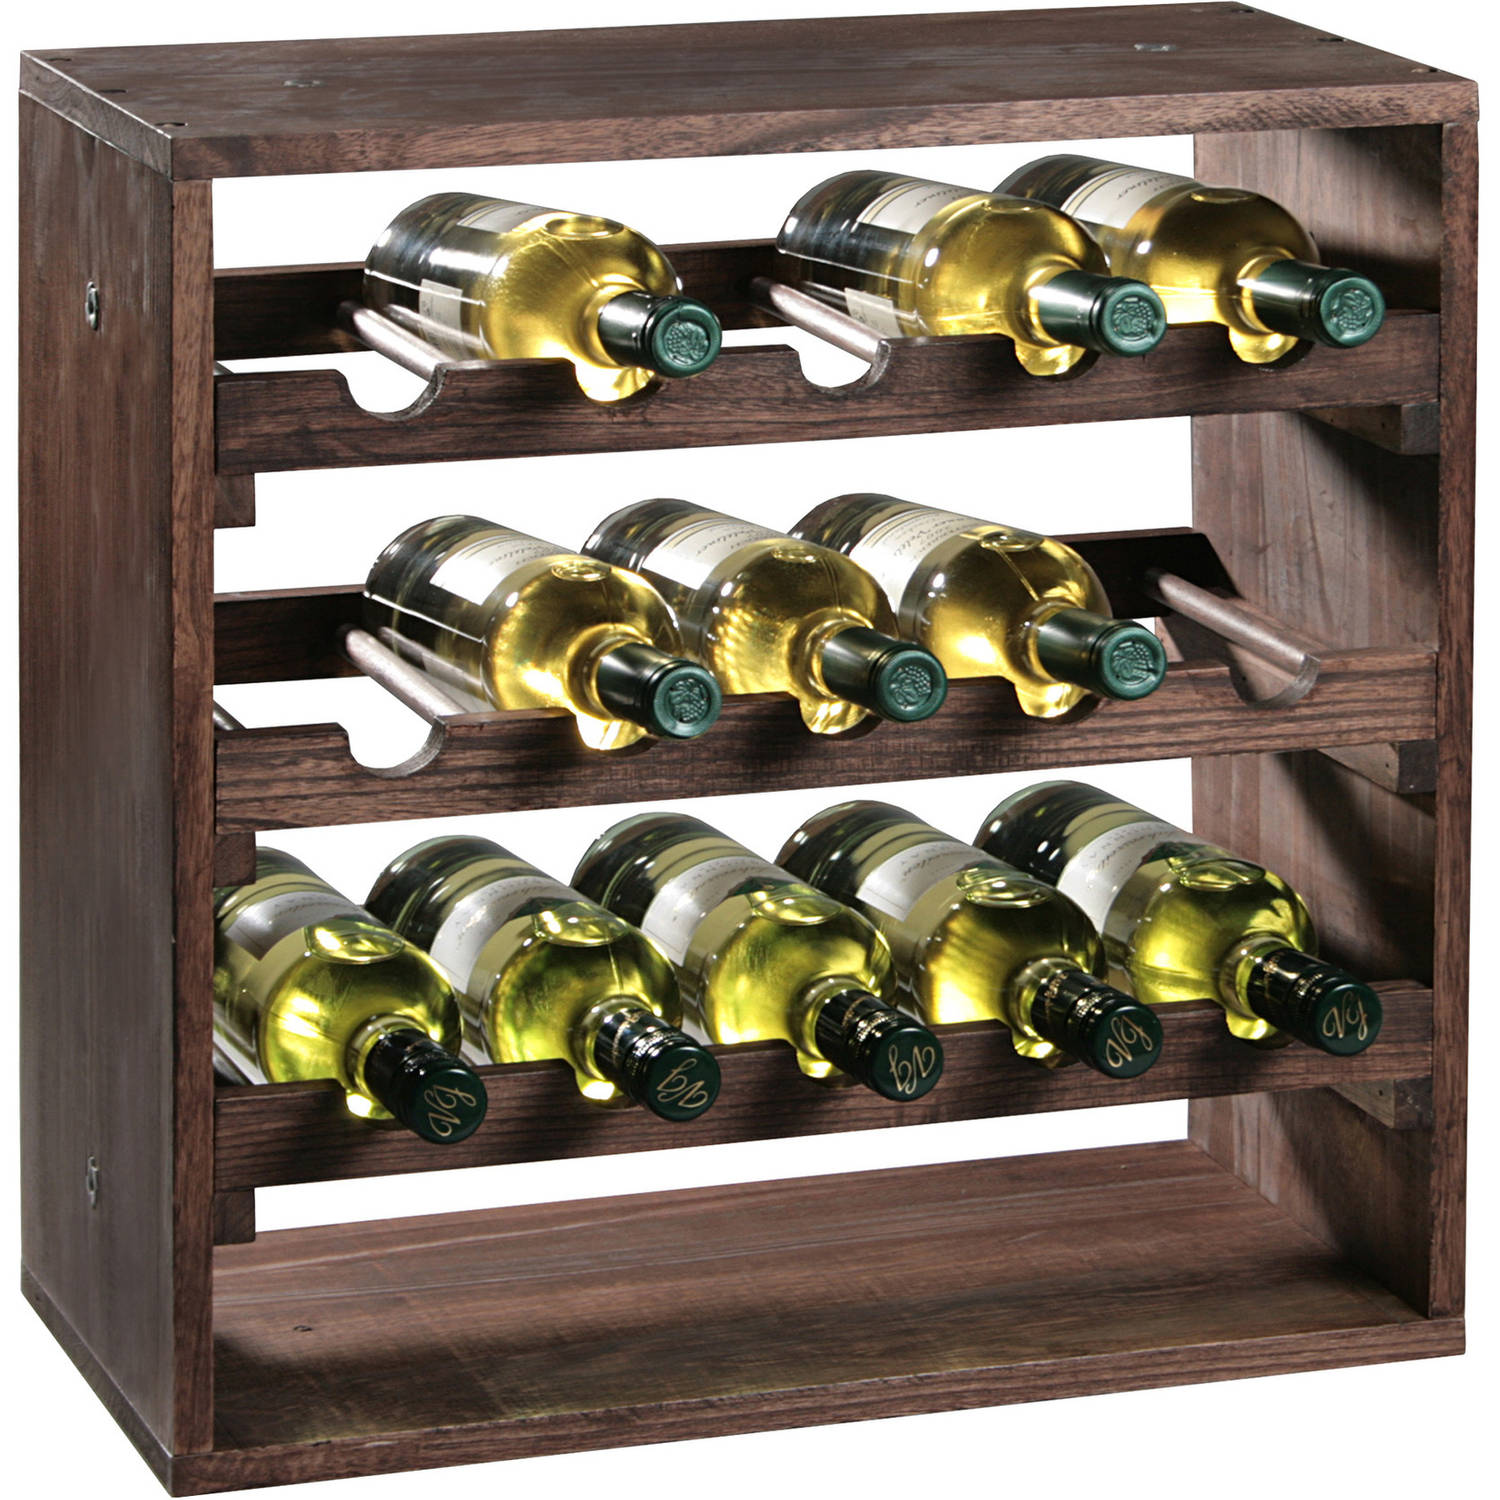 verkoper oplichter Wiens Houten wijnflessen rek/wijnrek vierkant voor 15 flessen 25 x 50 x 50 cm -  Wijnrekken | Blokker